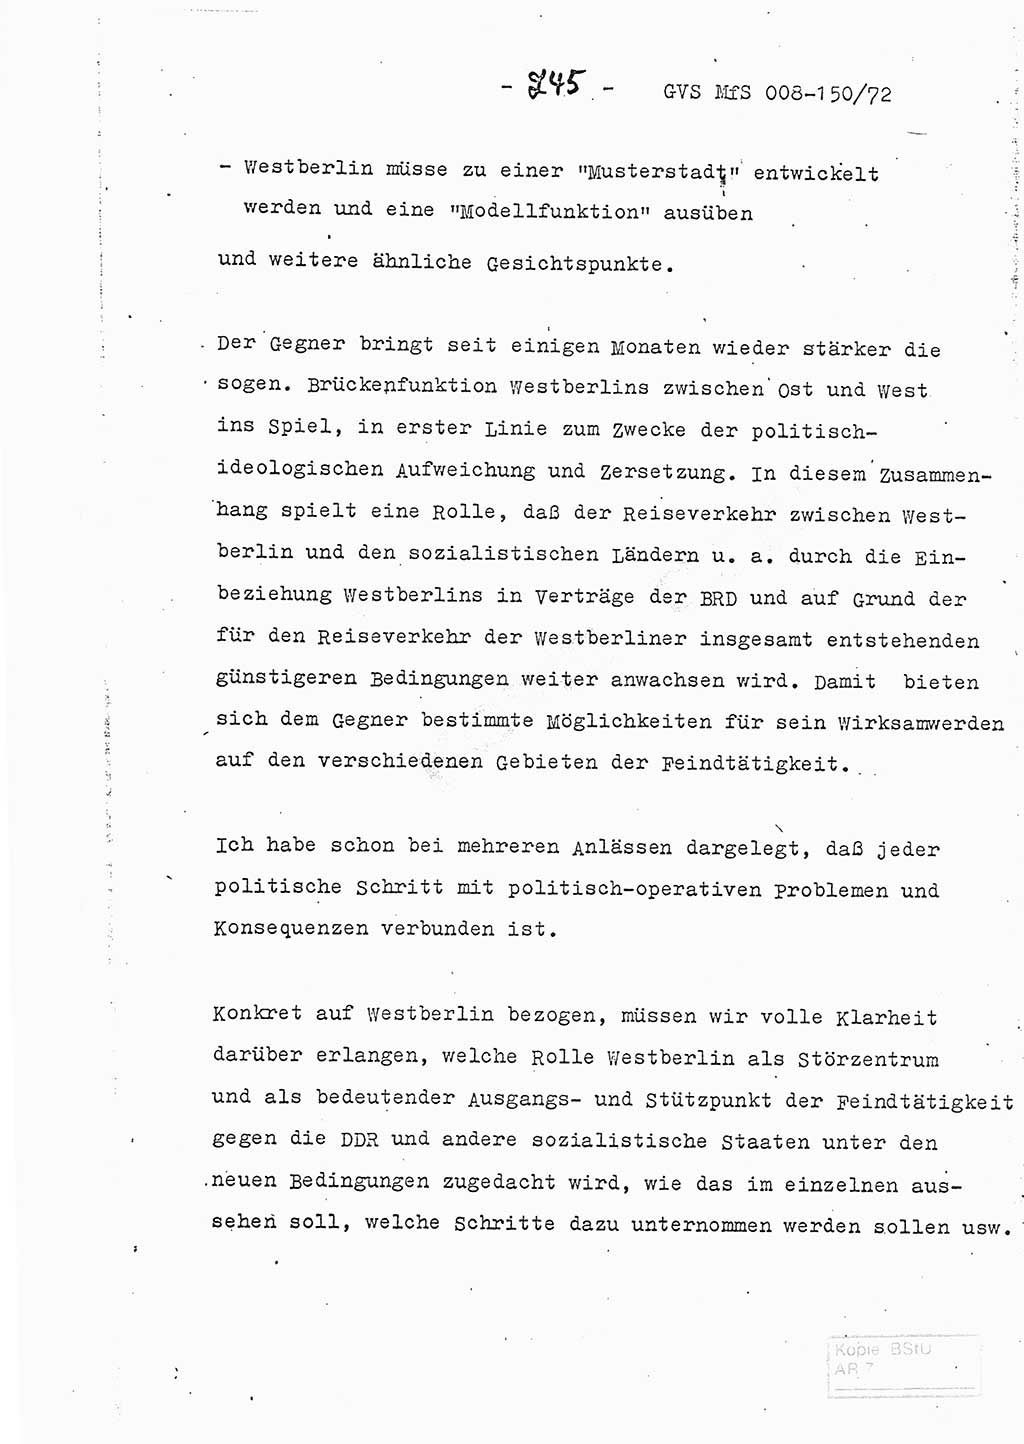 Referat (Entwurf) des Genossen Minister (Generaloberst Erich Mielke) auf der Dienstkonferenz 1972, Ministerium für Staatssicherheit (MfS) [Deutsche Demokratische Republik (DDR)], Der Minister, Geheime Verschlußsache (GVS) 008-150/72, Berlin 25.2.1972, Seite 245 (Ref. Entw. DK MfS DDR Min. GVS 008-150/72 1972, S. 245)